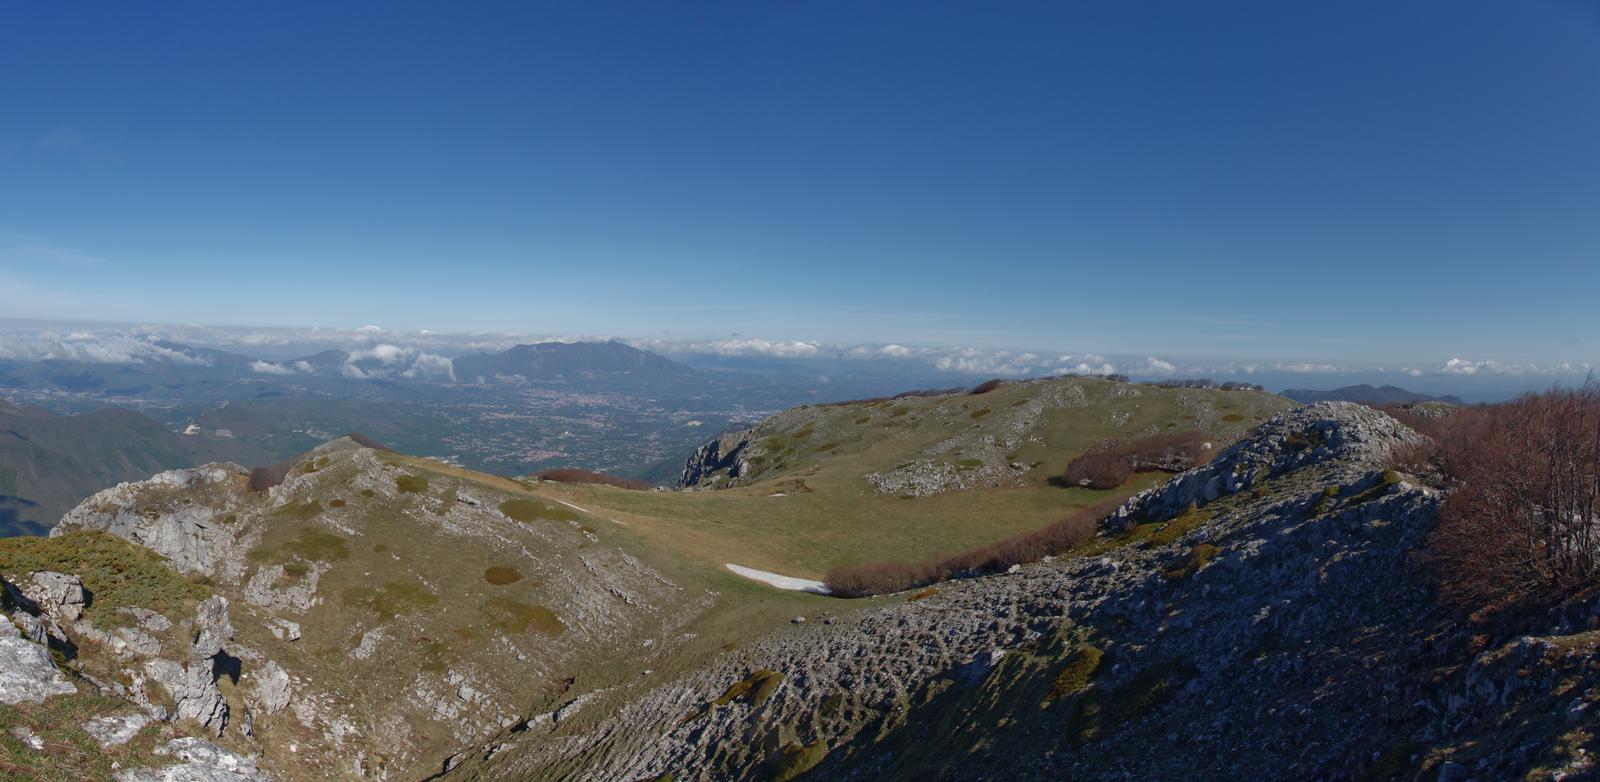 Monte Terminio, Valico dell’Immenso e Sentiero del Santissimo Salvatore-Ogliara da Campolaspierto